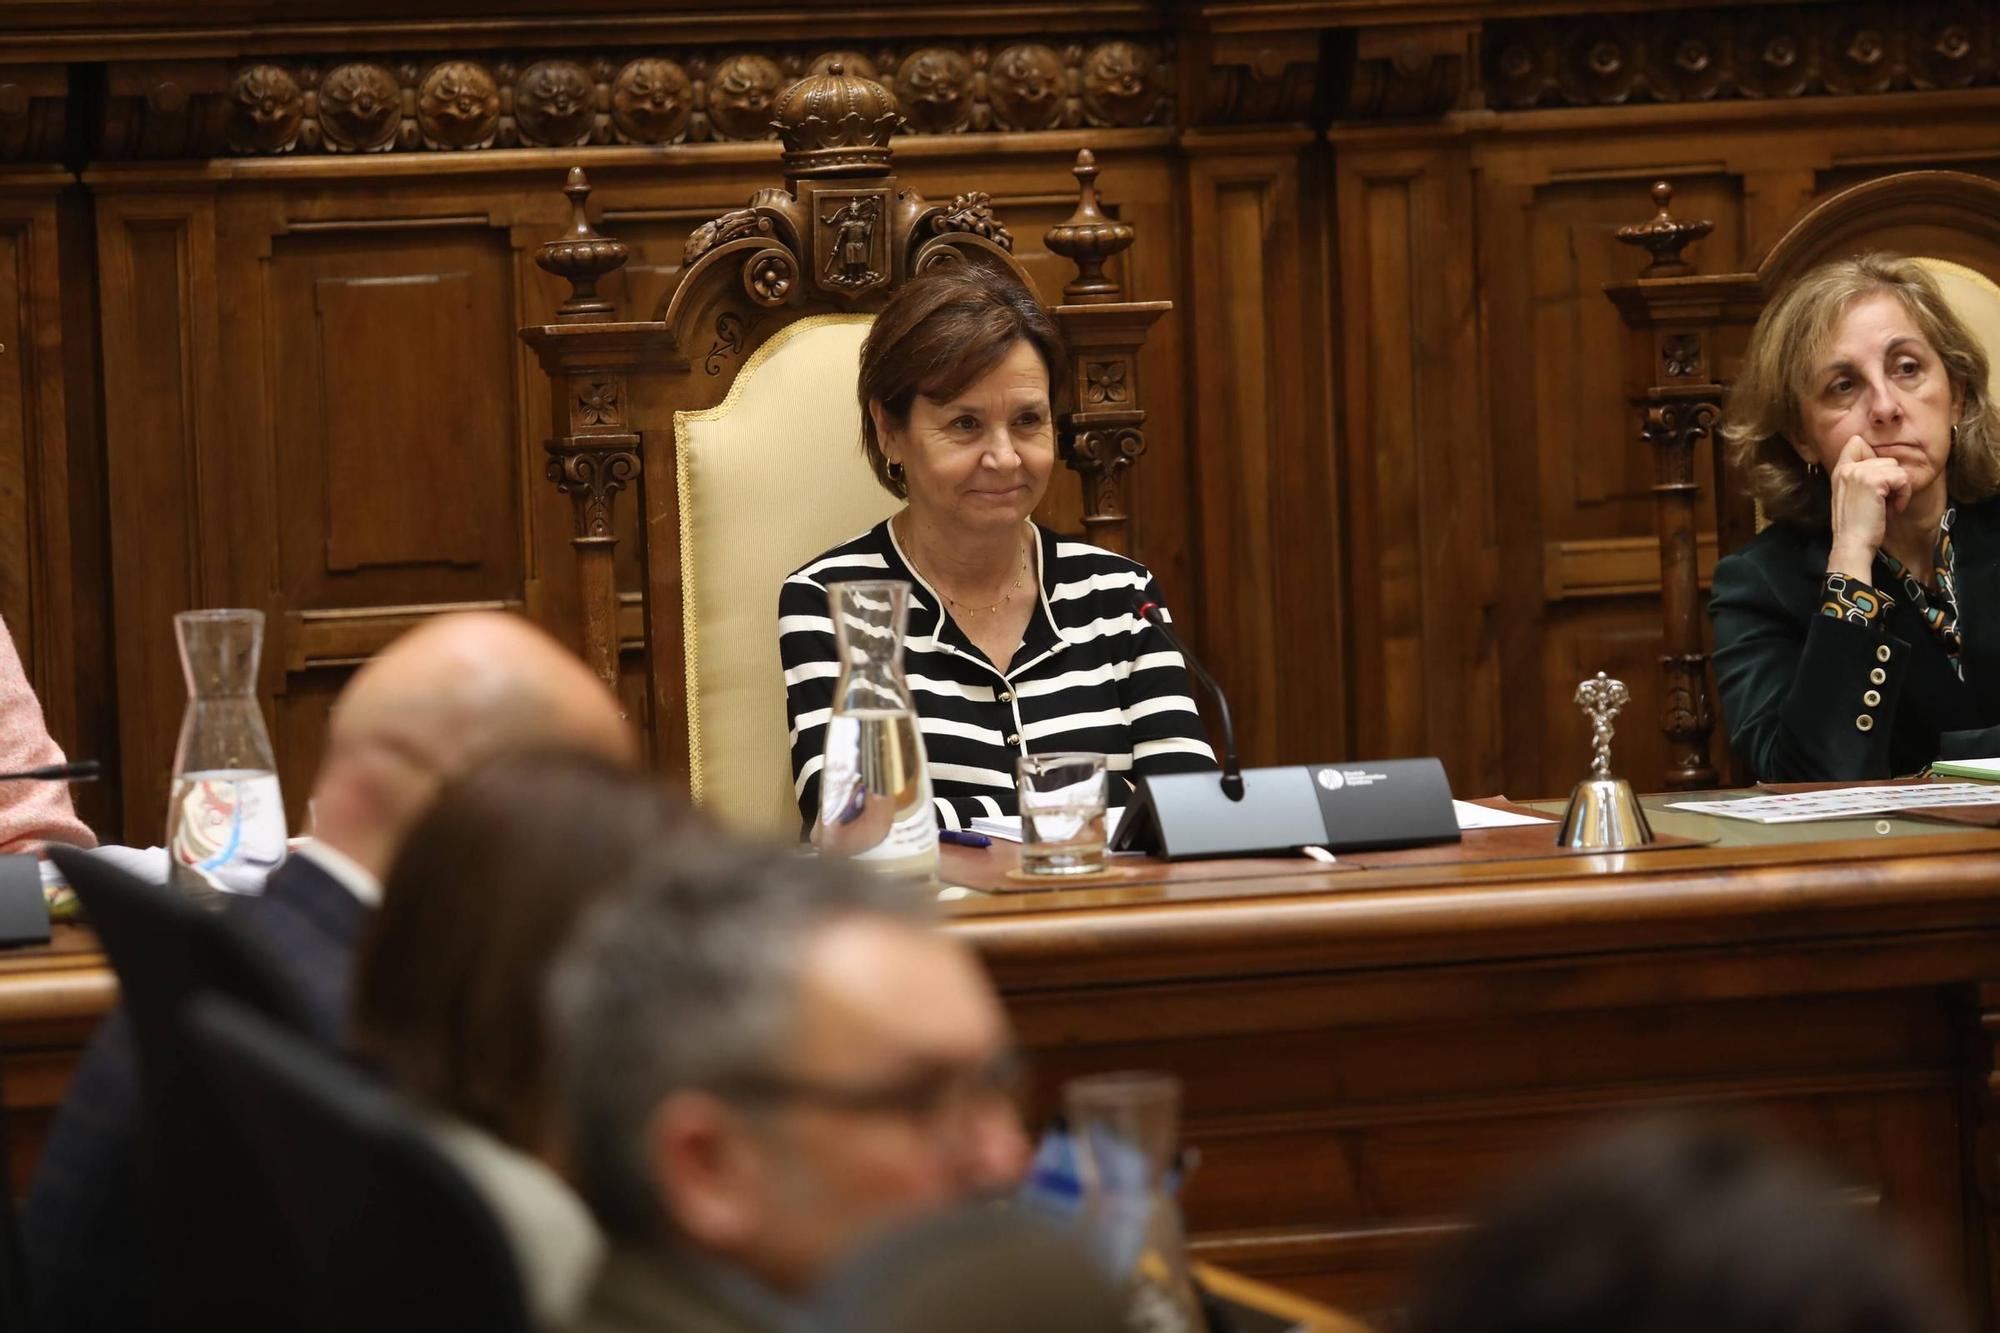 El Pleno municipal de enero en Gijón, en imágenes